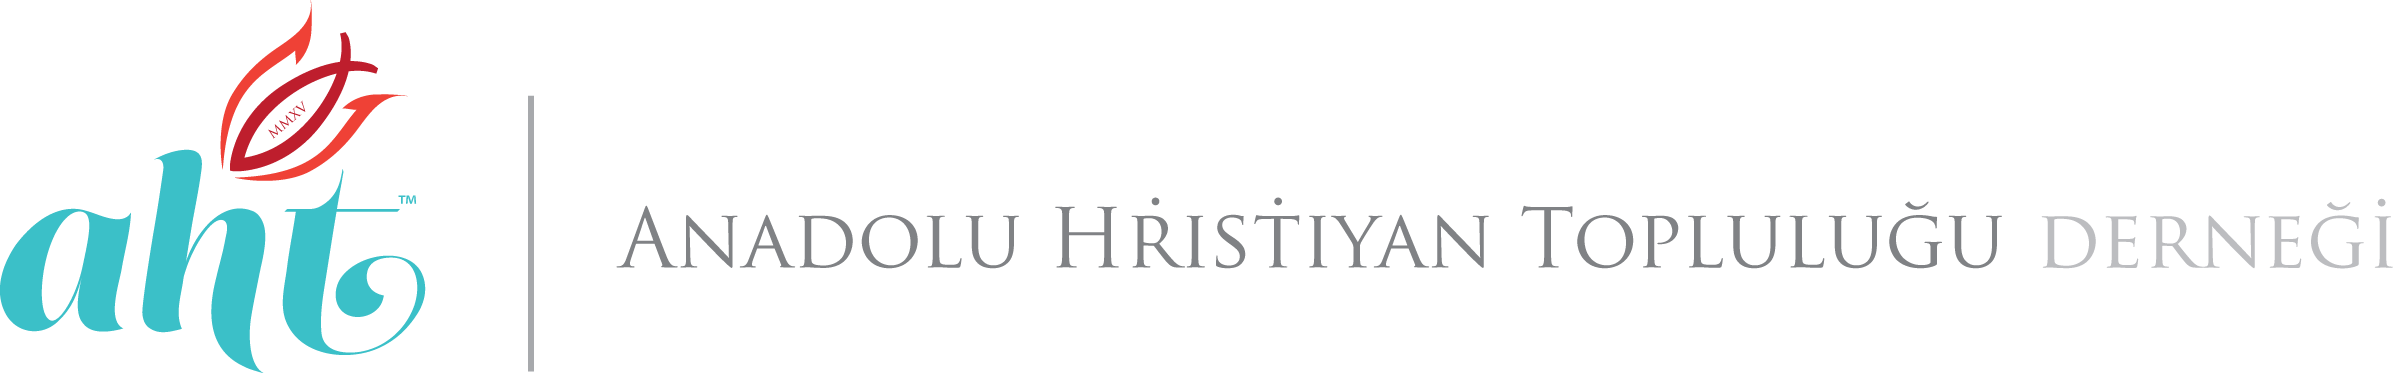 Anadolu Hristiyan Topluluğu Derneği